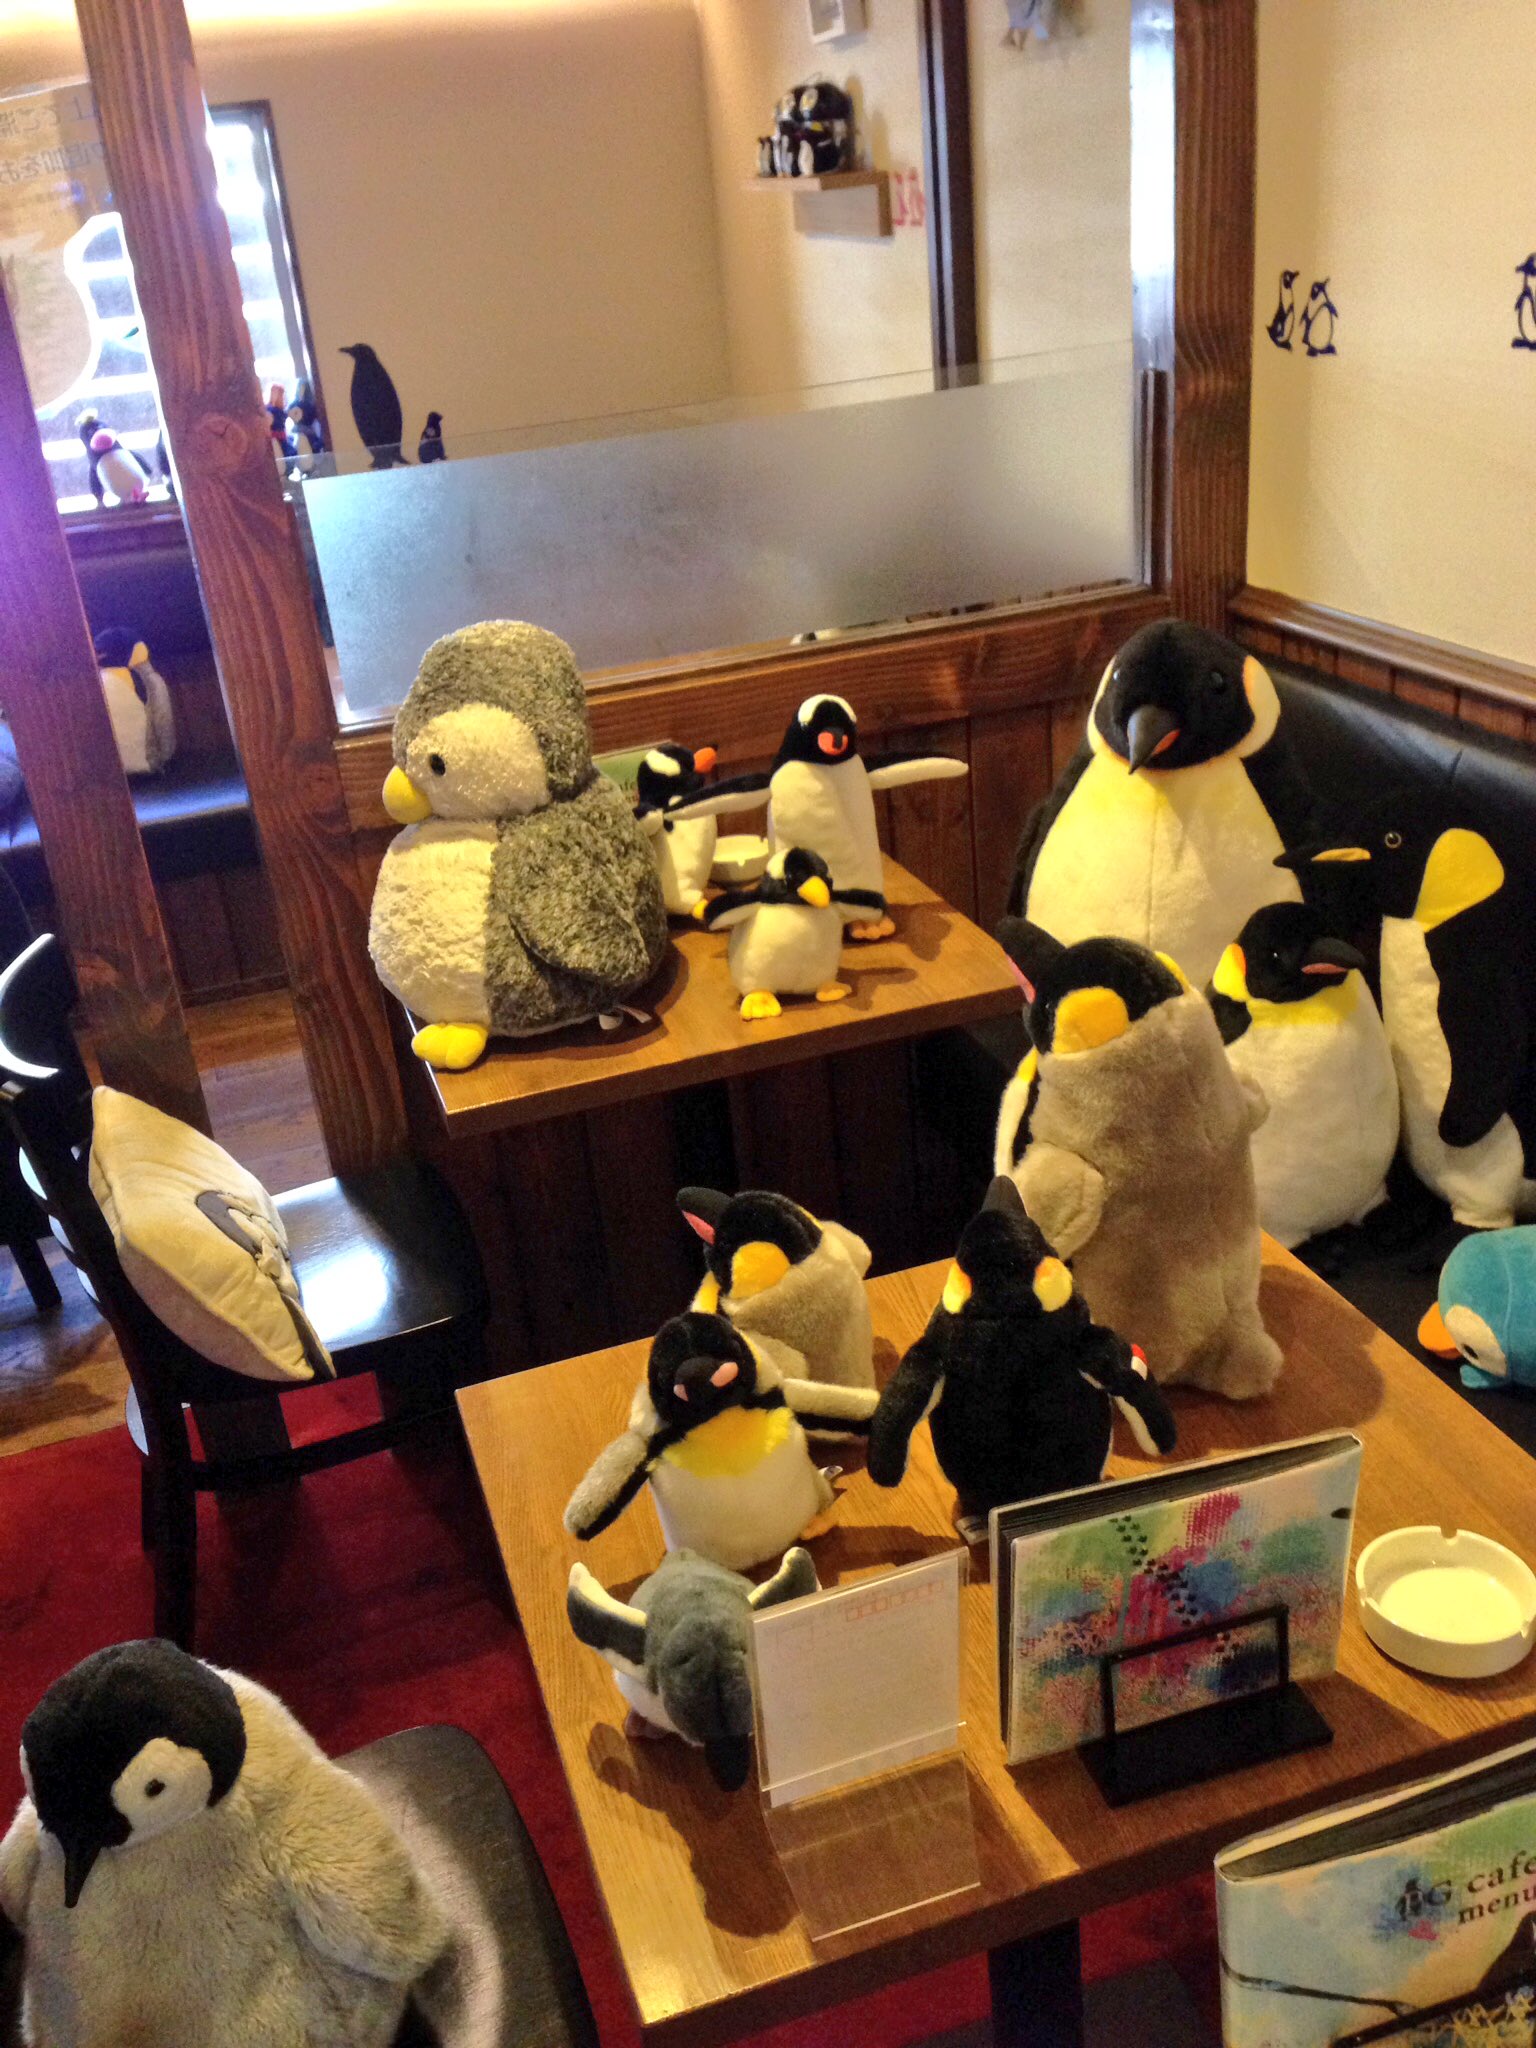 ペンギンカフェ名古屋 大須 PGカフェ on Twitter "「店内の写真撮っても」 「うちにあるペンギン寄付したい」 「Twitterや